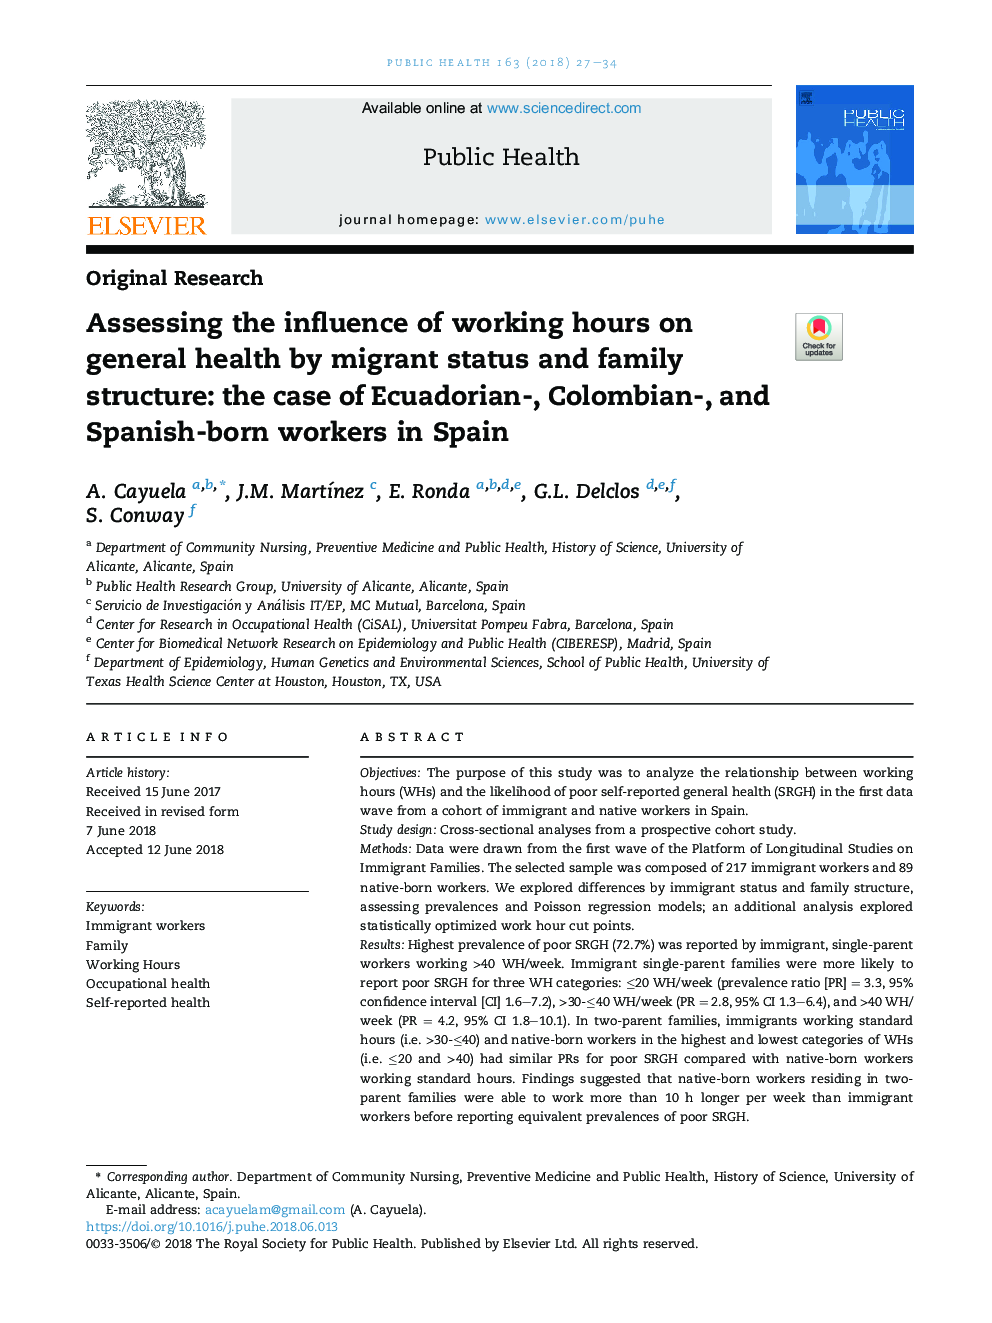 بررسی تأثیر ساعات کار بر سلامت عمومی توسط وضعیت مهاجر و ساختار خانواده: مورد کارگران اکوادور، کلمبیایی و اسپانیایی در اسپانیا 